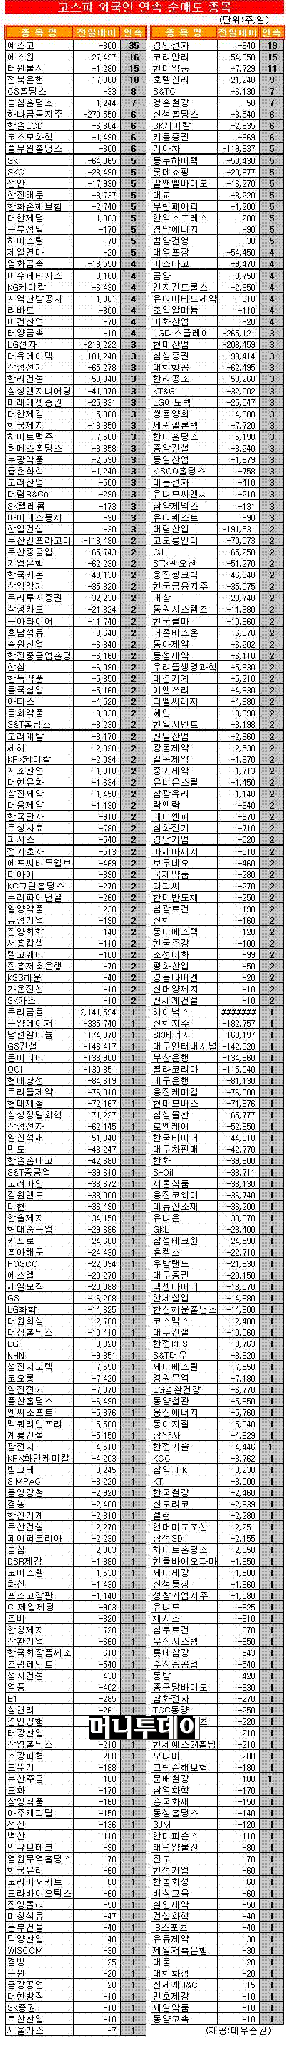 [표]코스피 외국인 연속 순매도 종목-18일